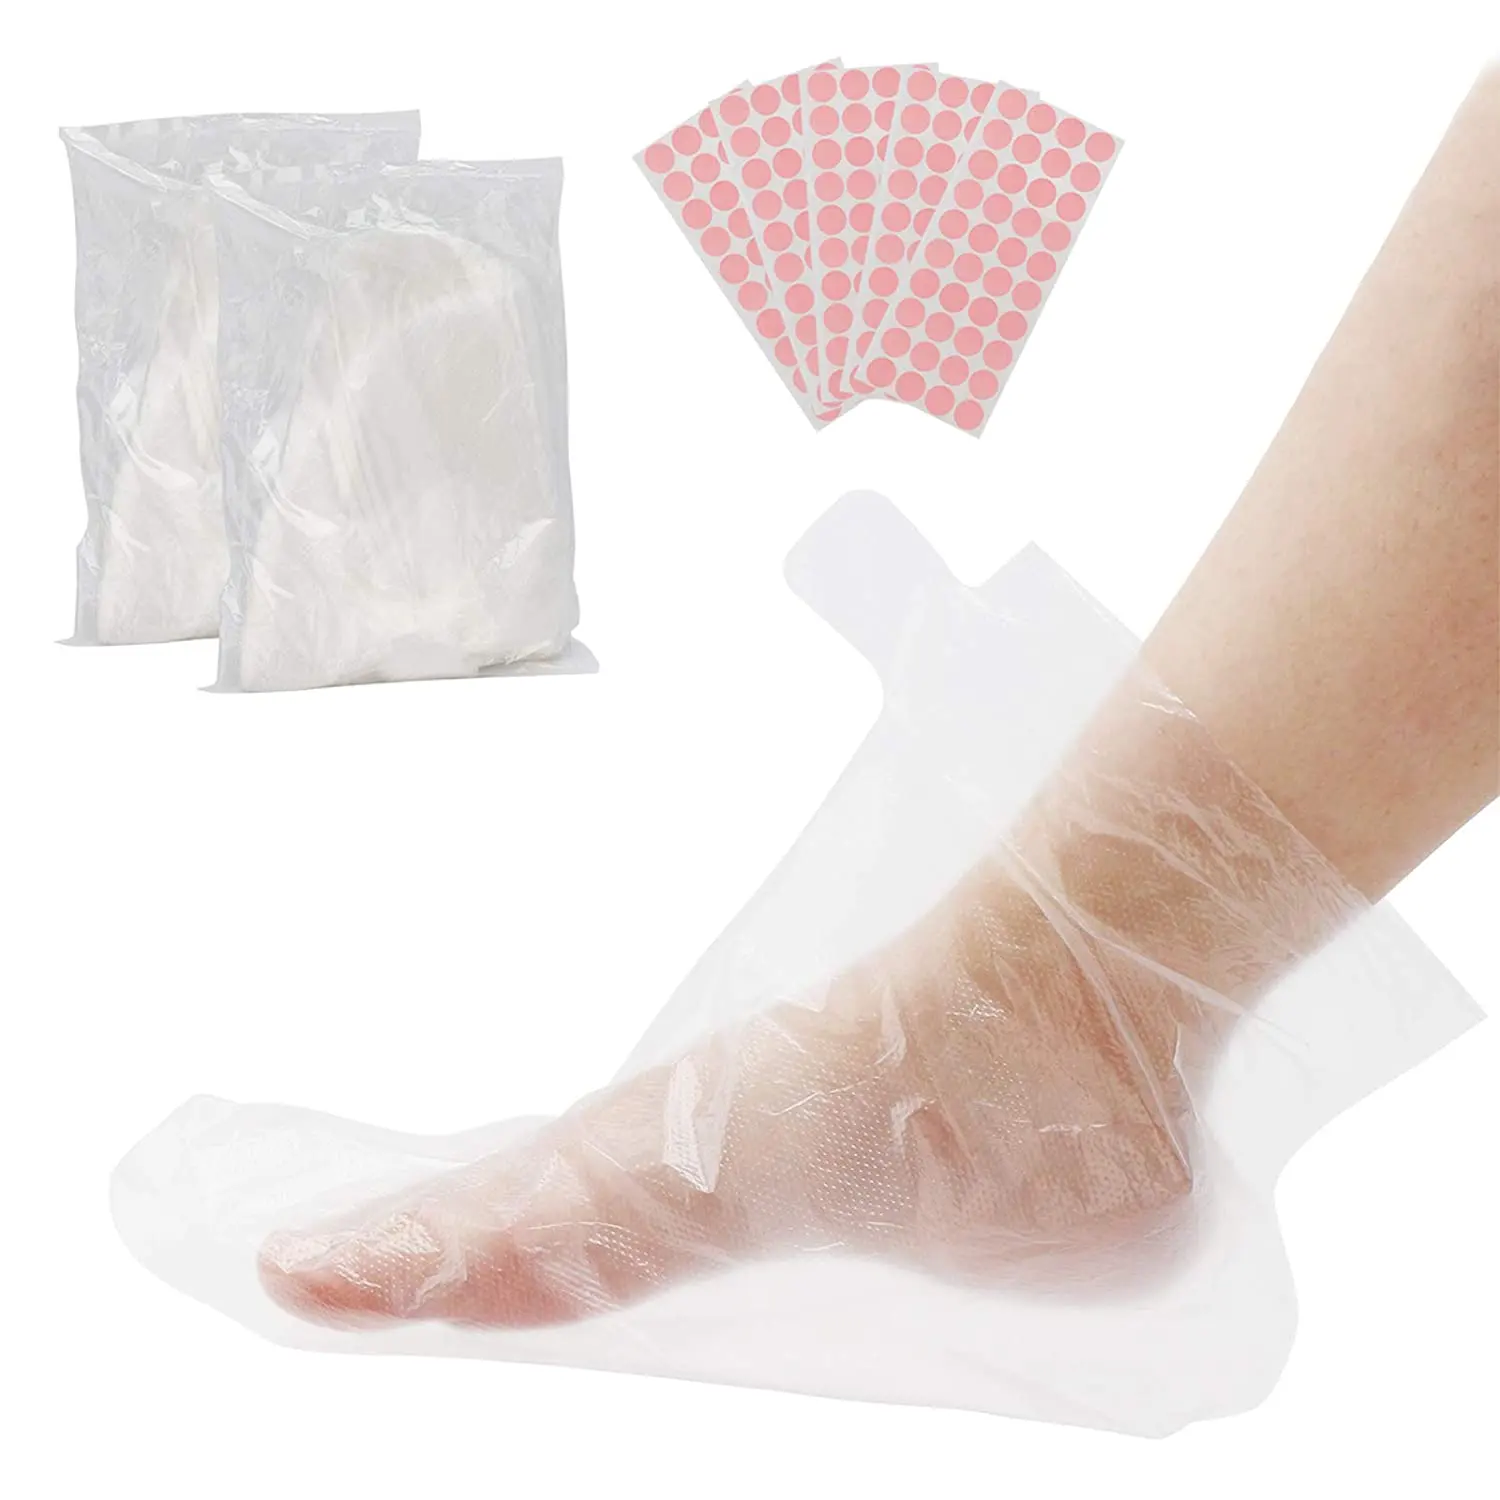 Одноразовая прочная водонепроницаемая пластиковая накладка на ногу для педикюра, широко используется в магазине по уходу за ногами, оптом